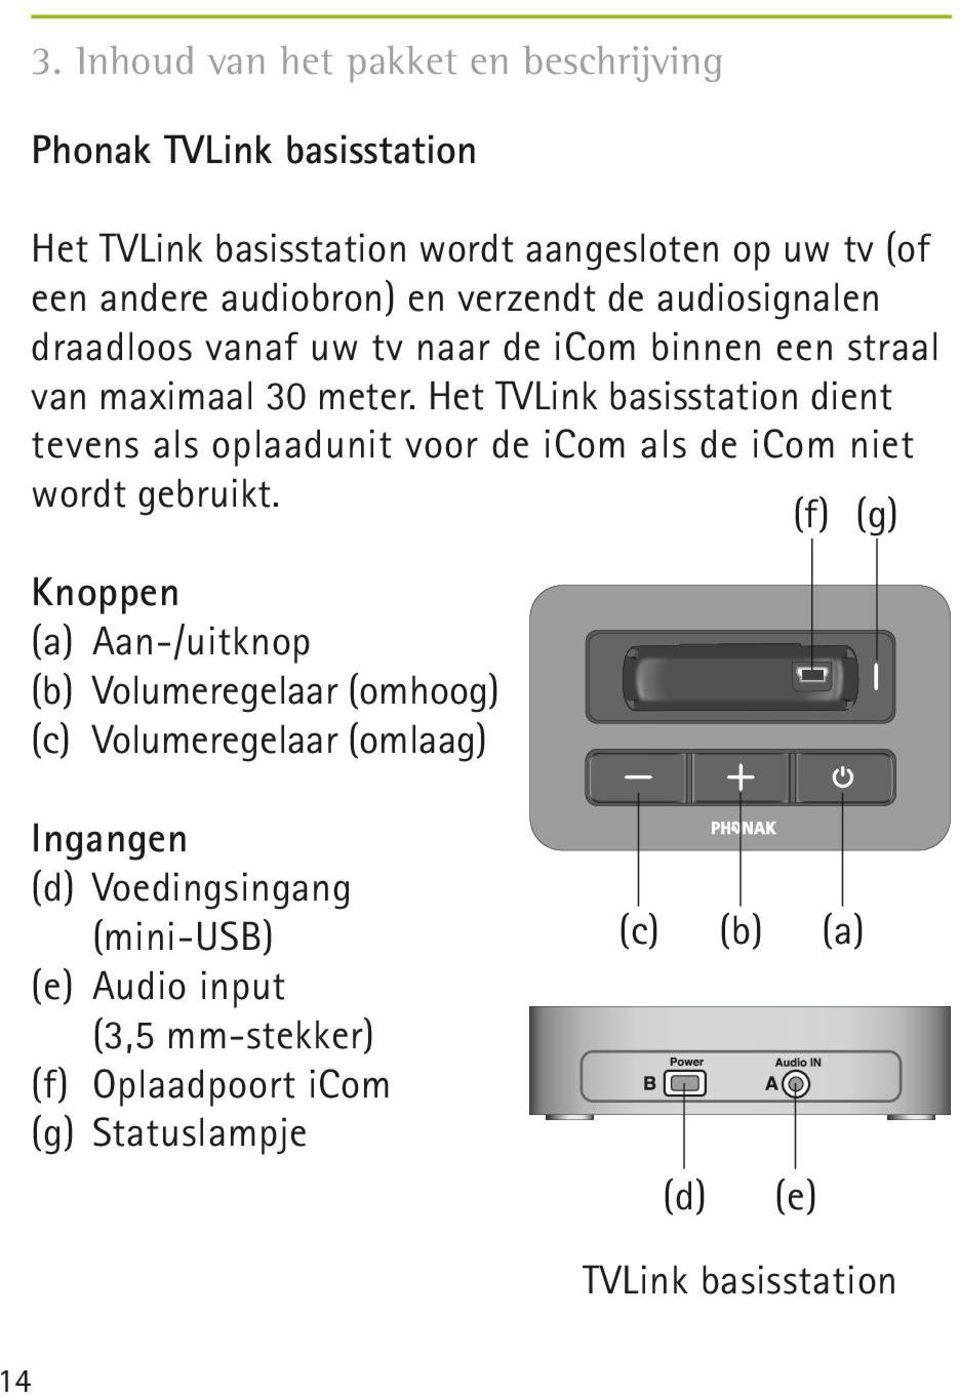 Het TVLink basisstation dient tevens als oplaadunit voor de icom als de icom niet wordt gebruikt.